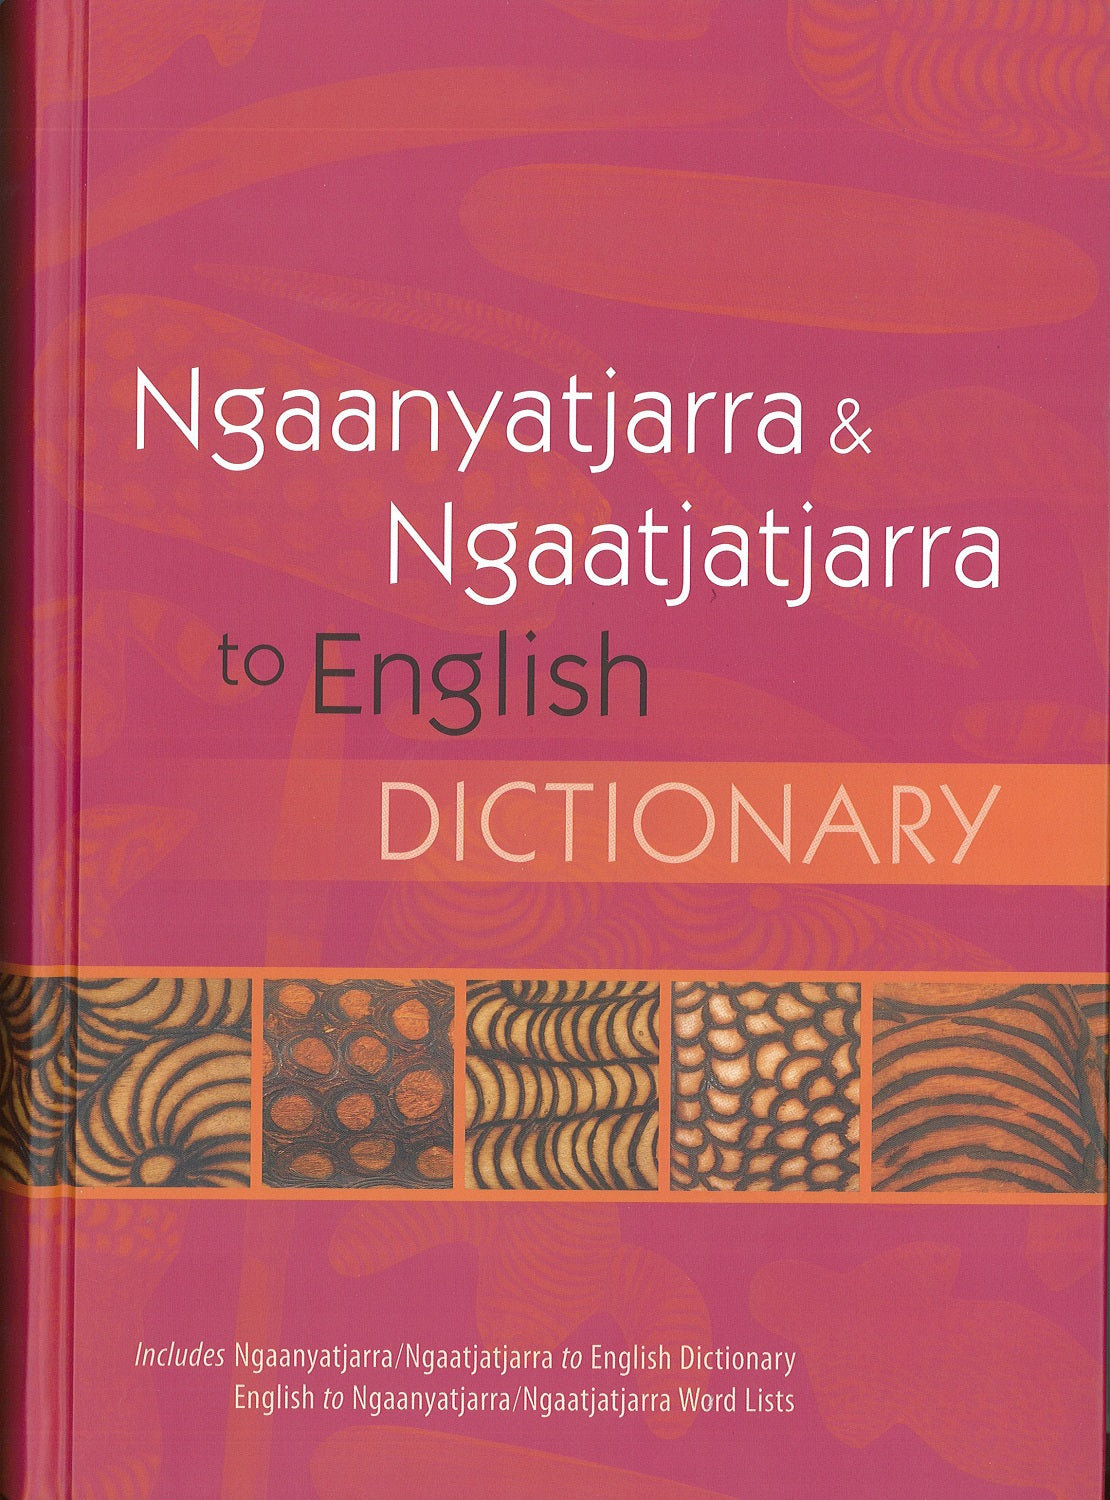 Ngaanyatjarra & Ngaatjatjarra to English Dictionary | IAD Press | Australian Aboriginal Publisher & Book Shop